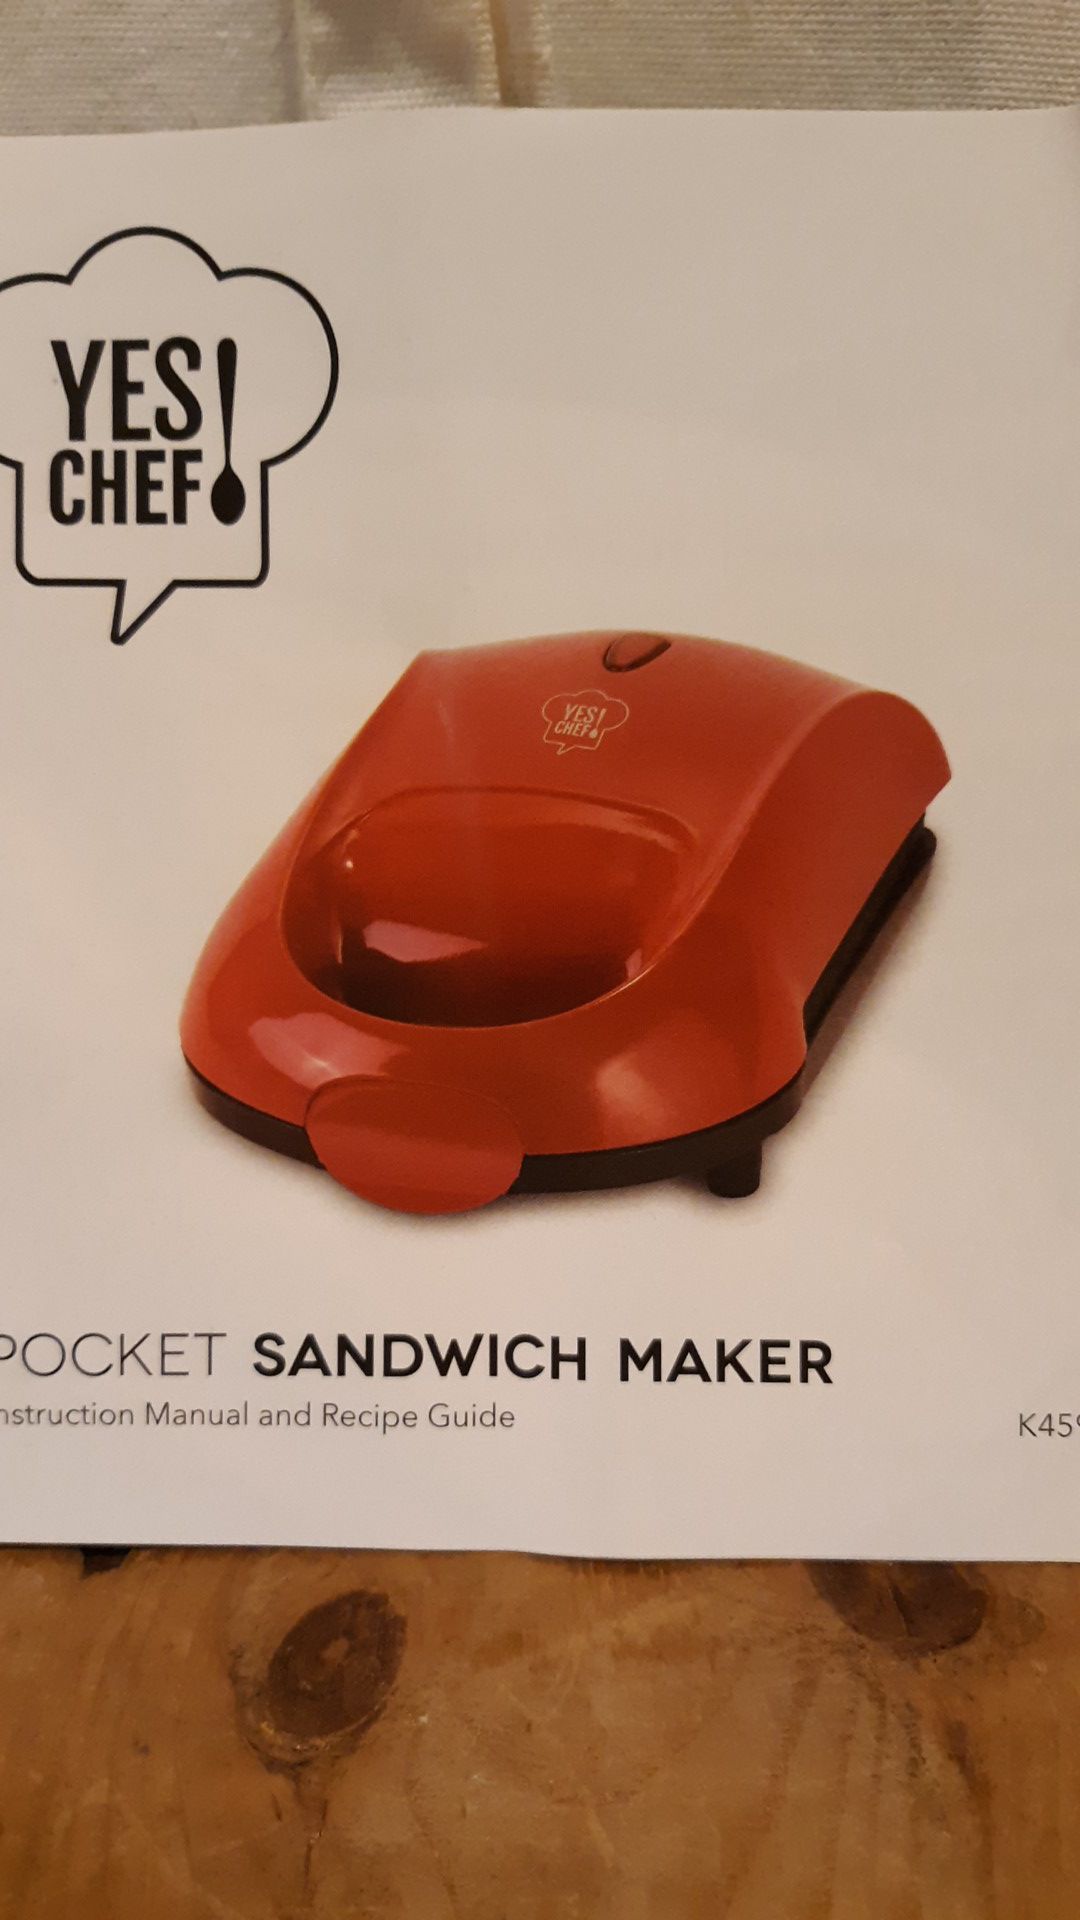 New poket sandwich maker